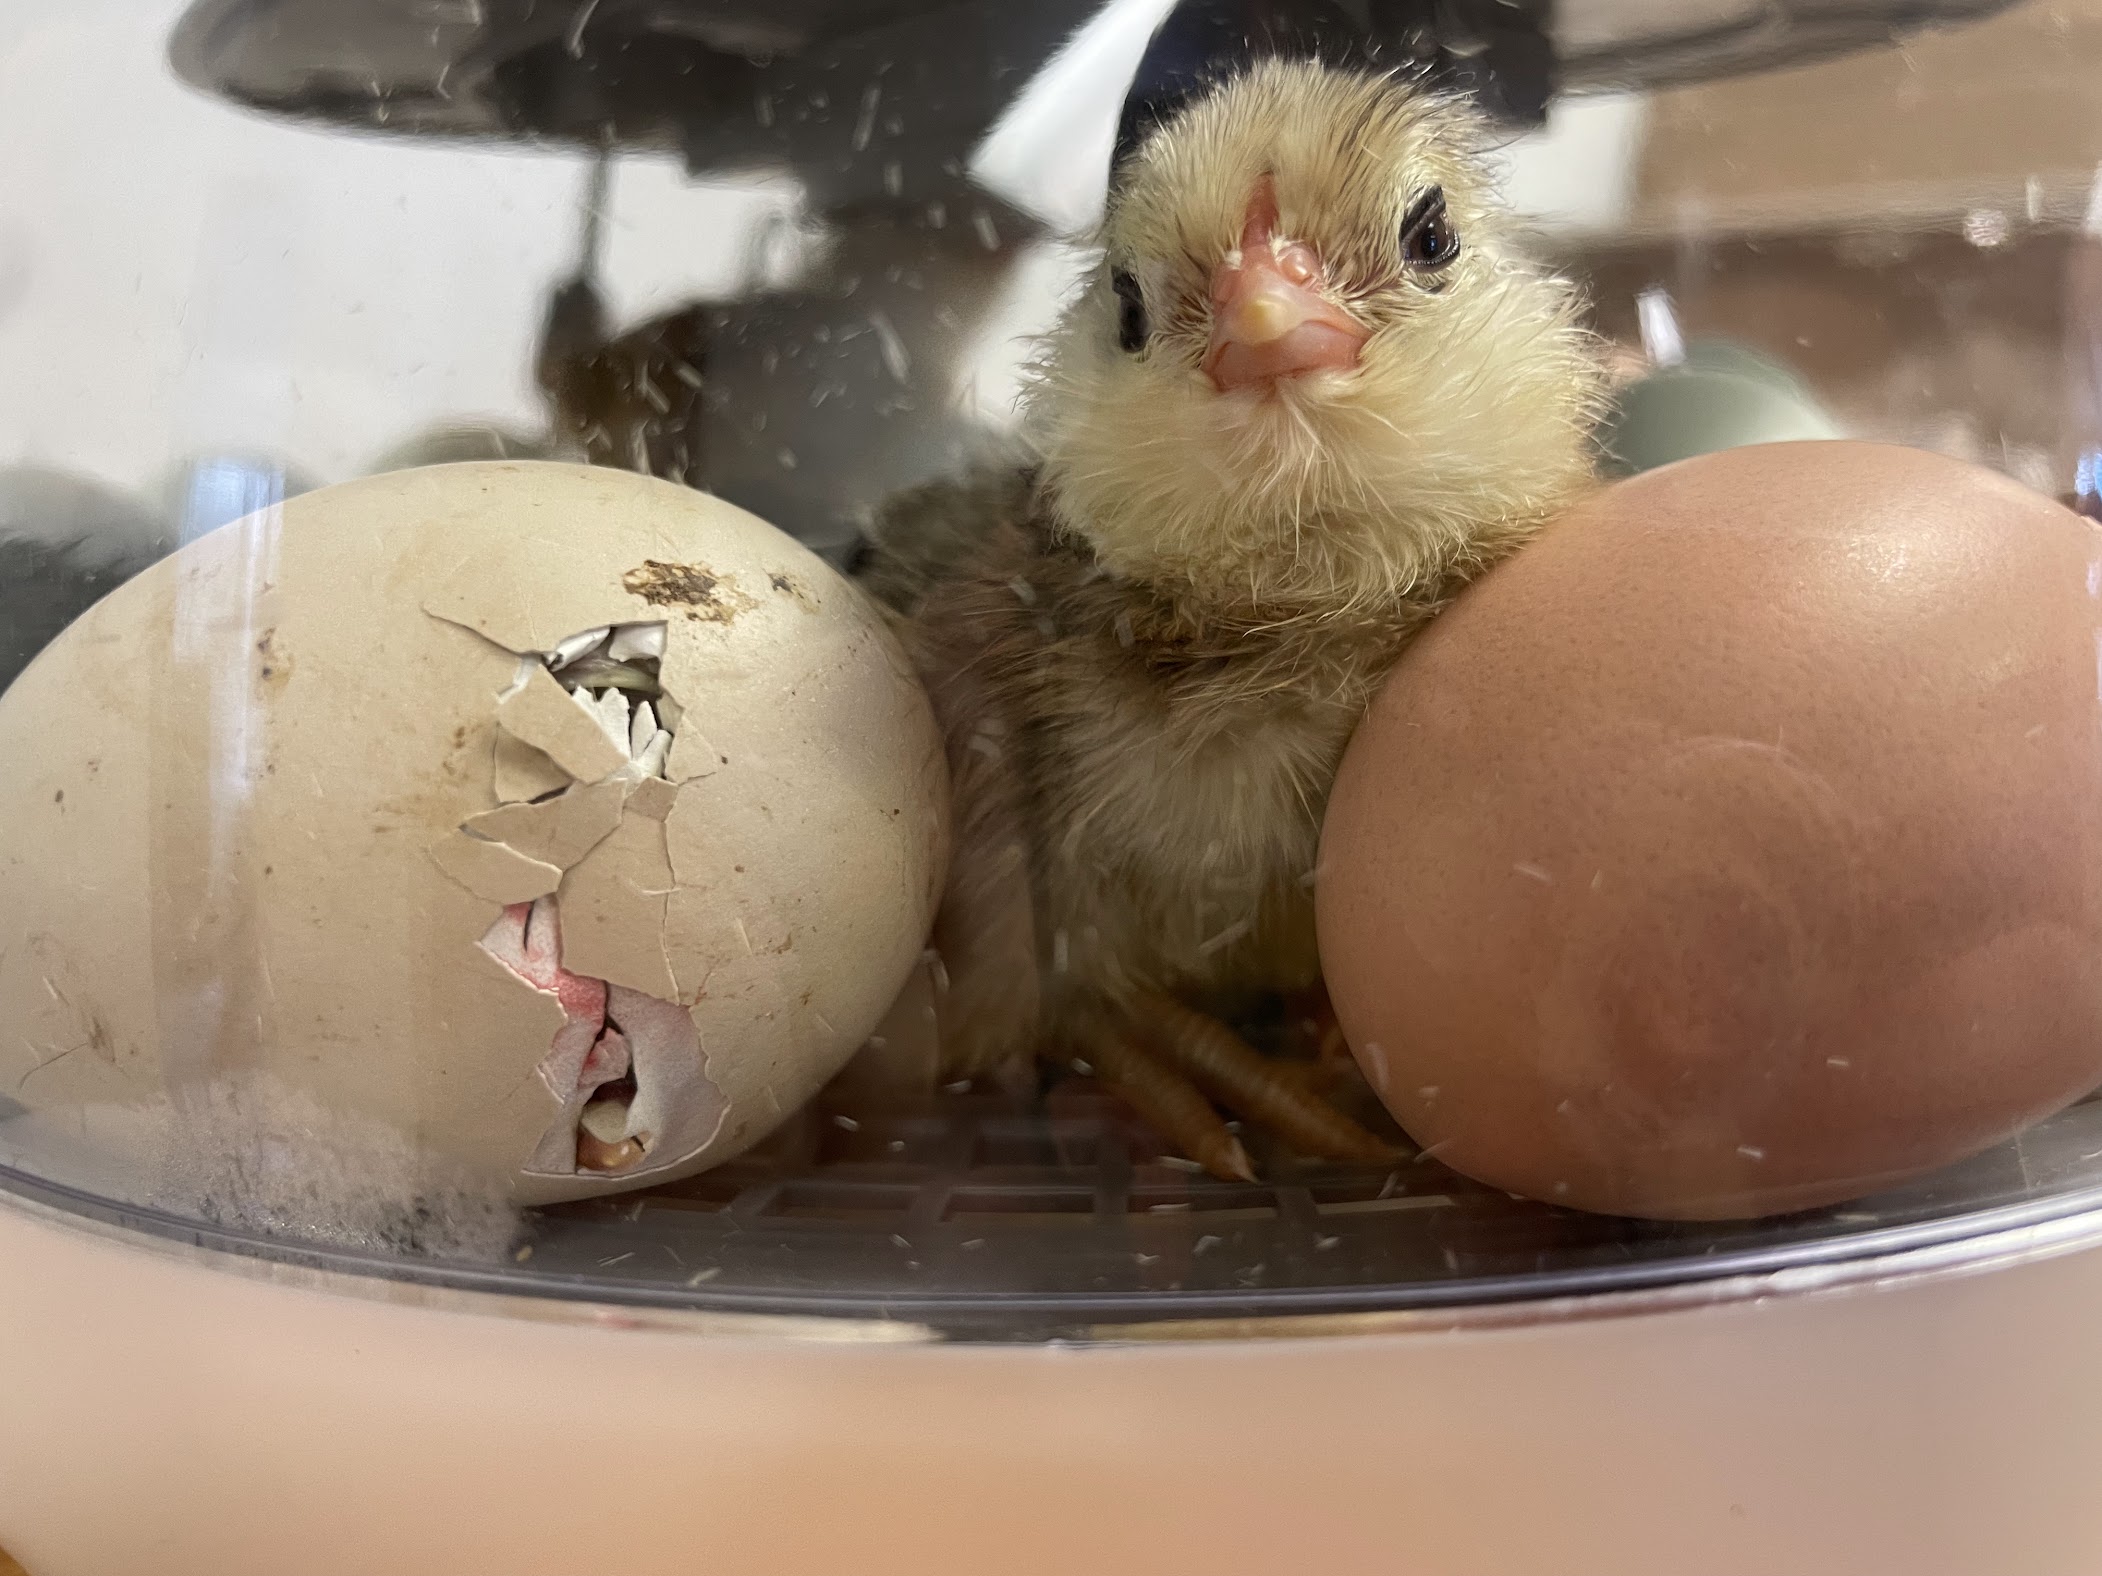 Newborn chick in an incubator.